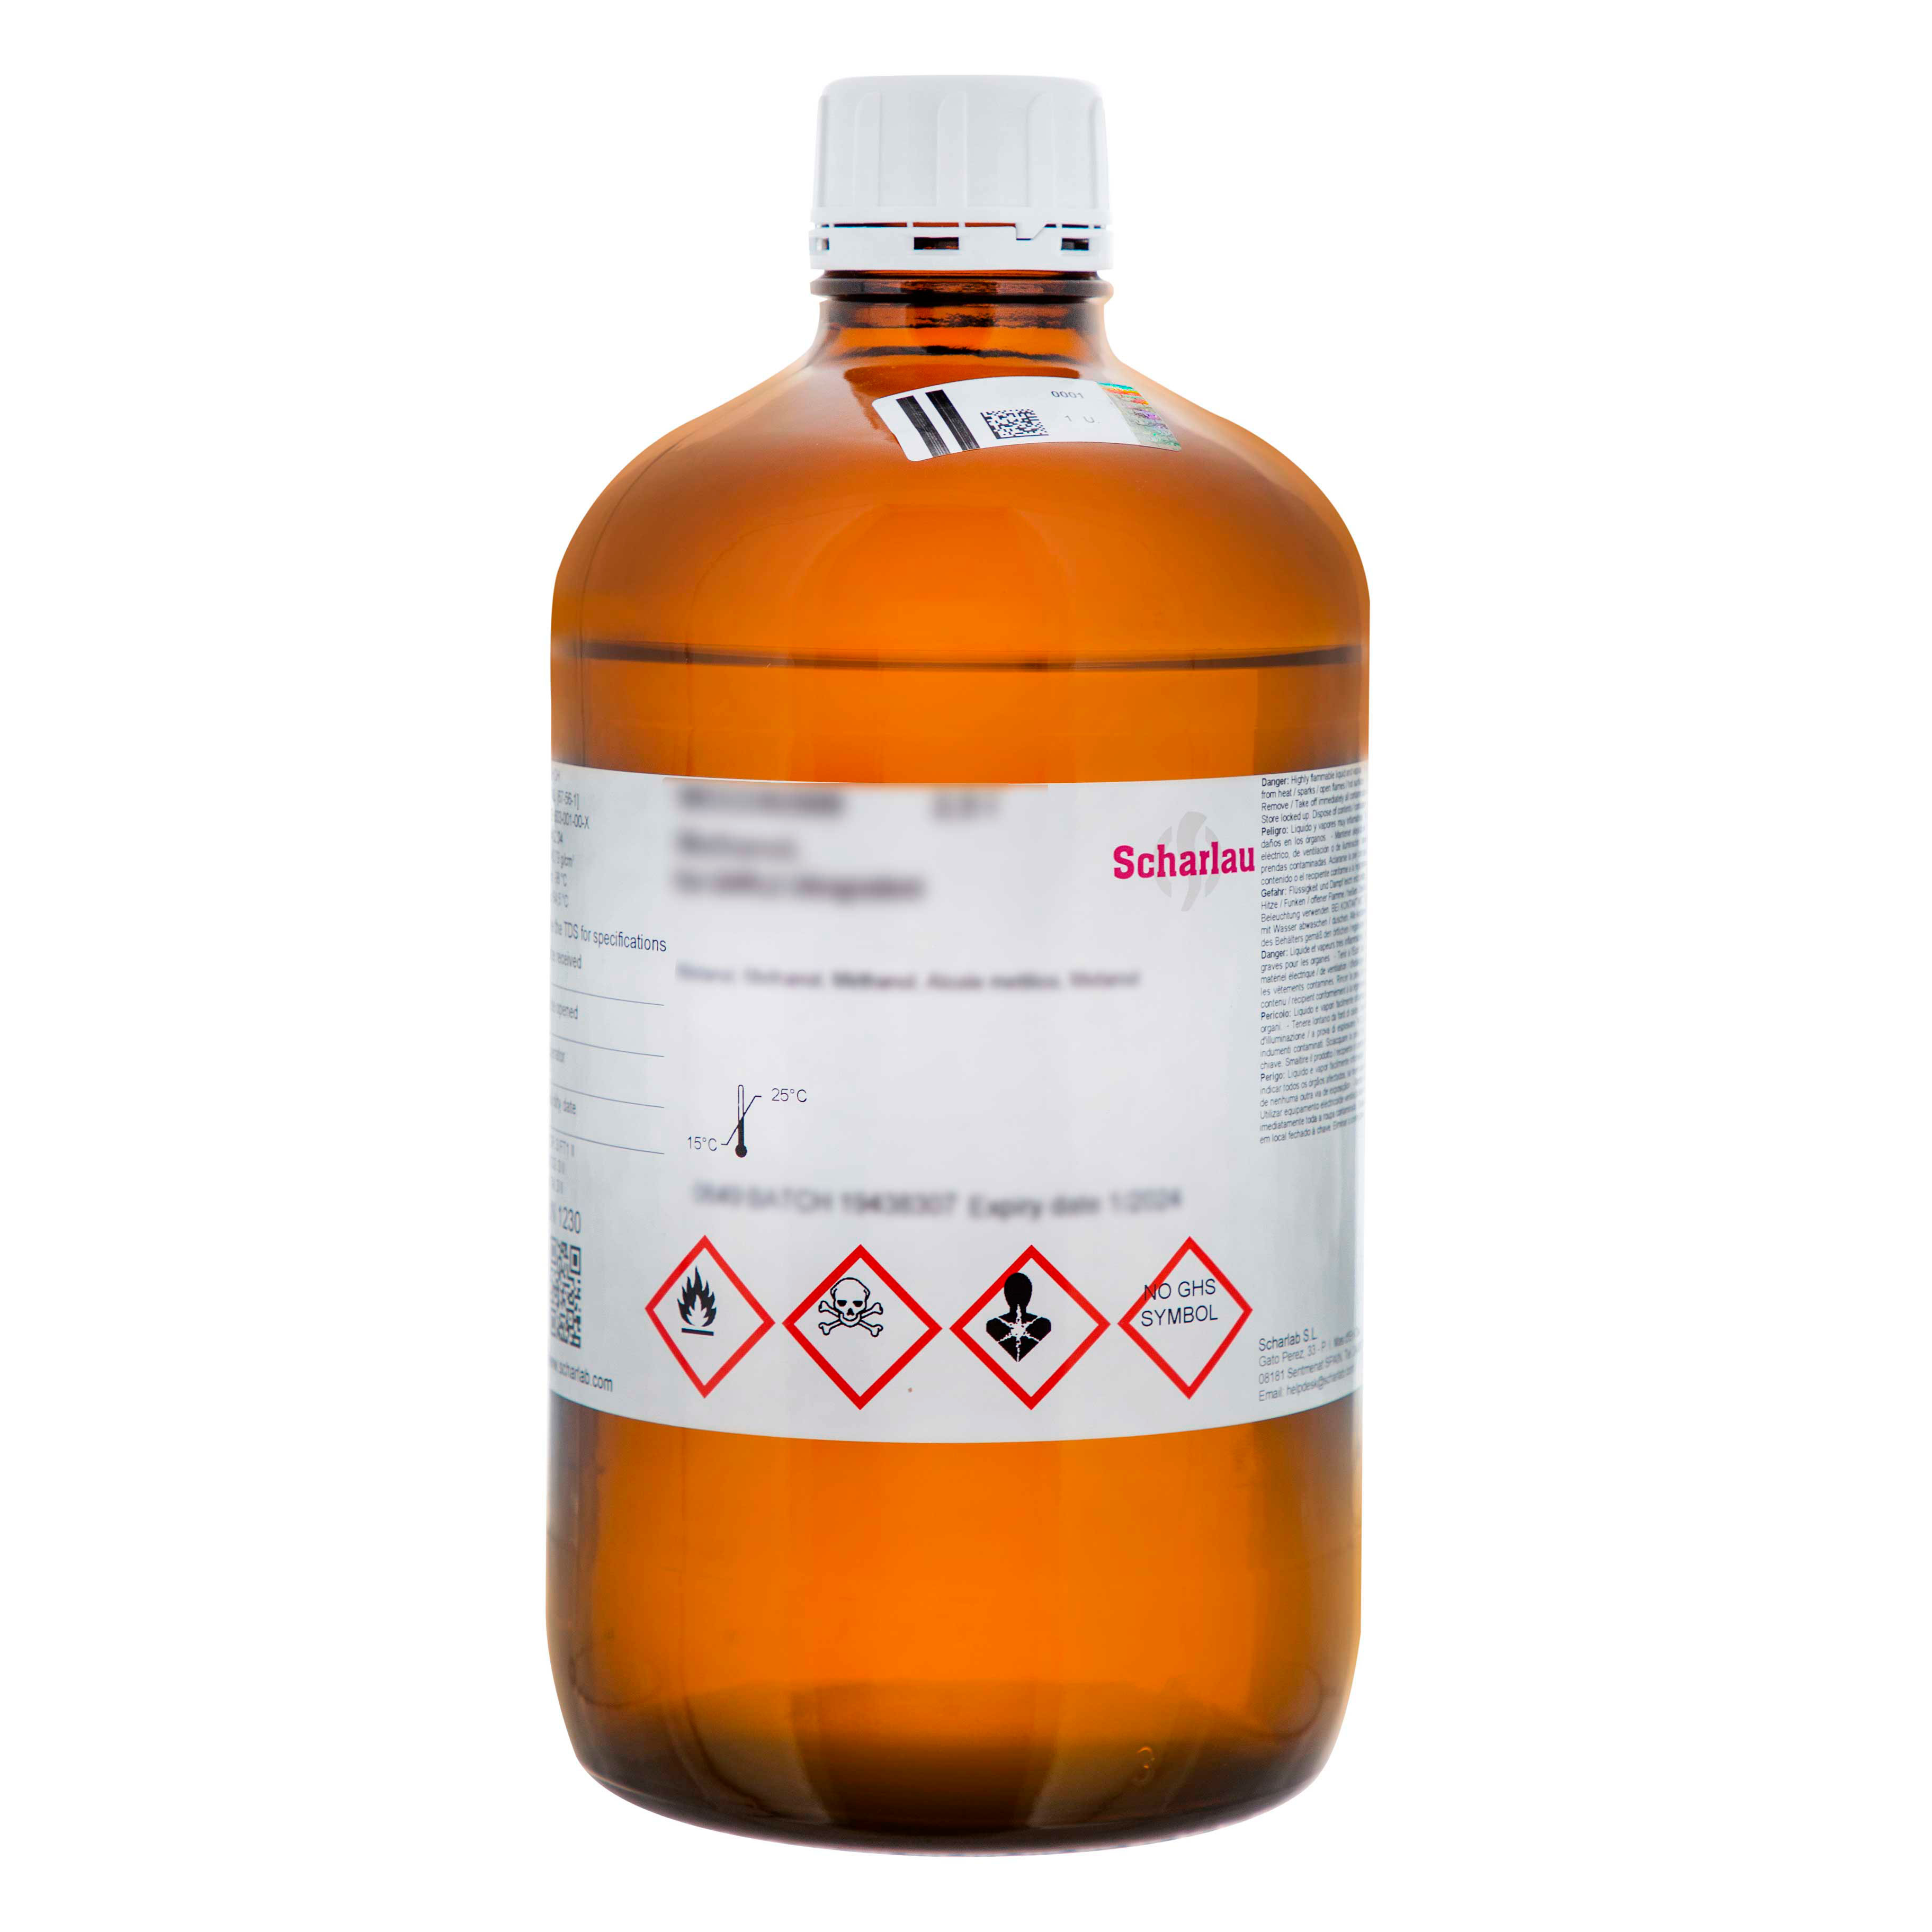 Aquagent® Titrant 5, sin piridina, componente valorante para la valoración volumétrica de Karl Fischer